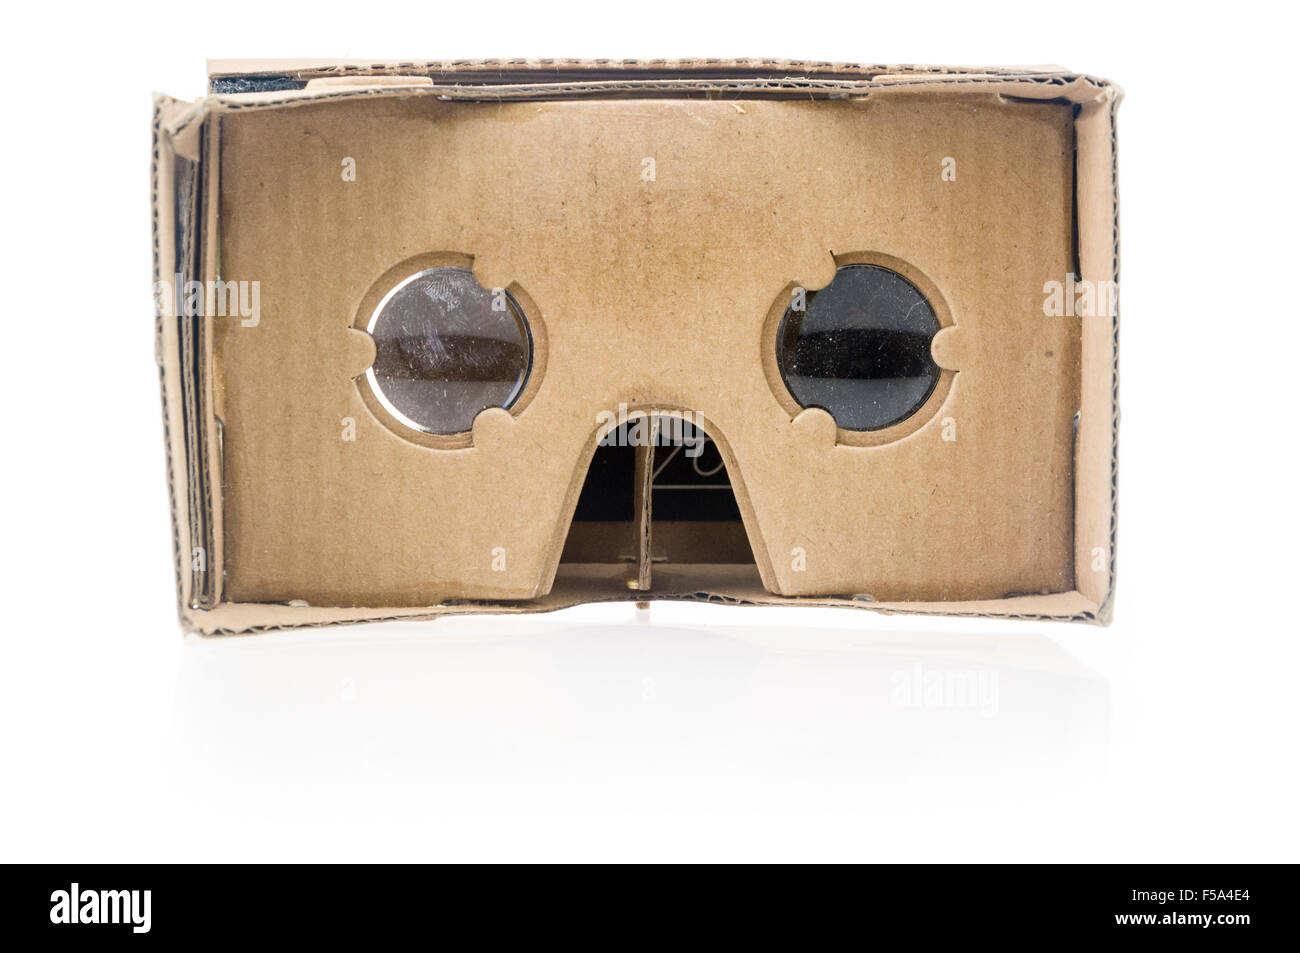 Google cartone, un 3D la realtà virtuale accessorio per smartphone Foto Stock